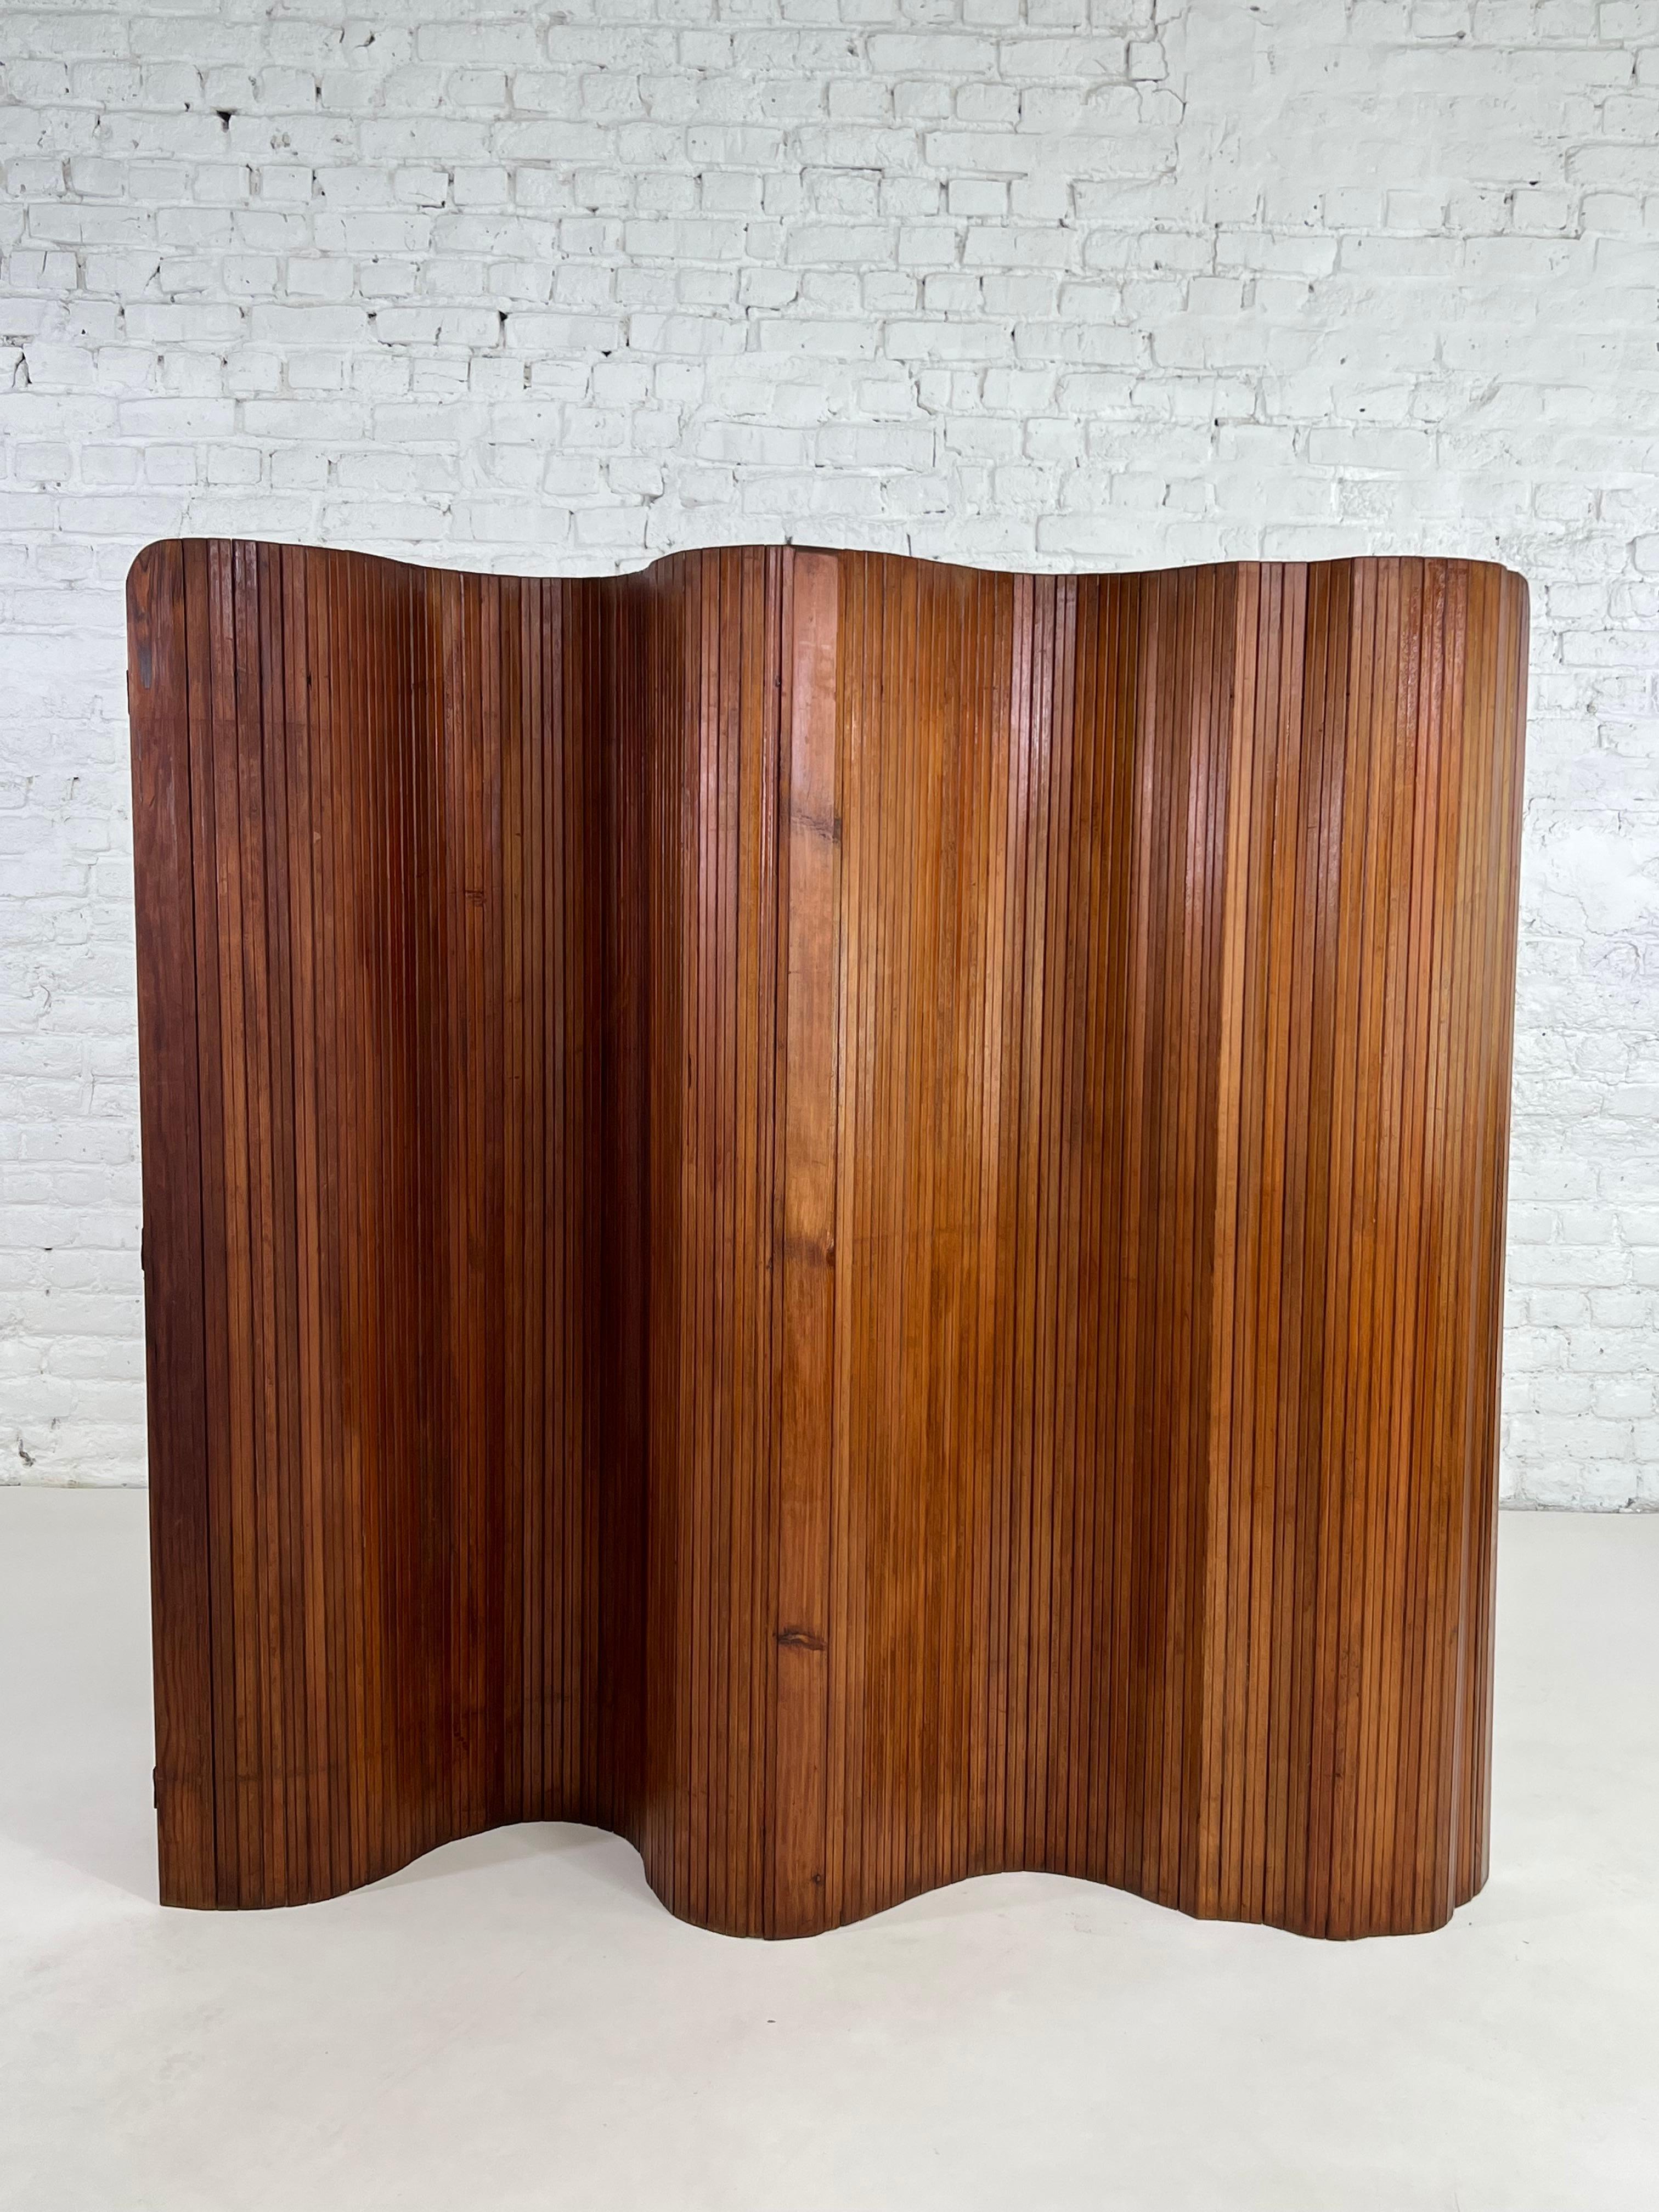 Baumman 1940s wooden folding screen divider.